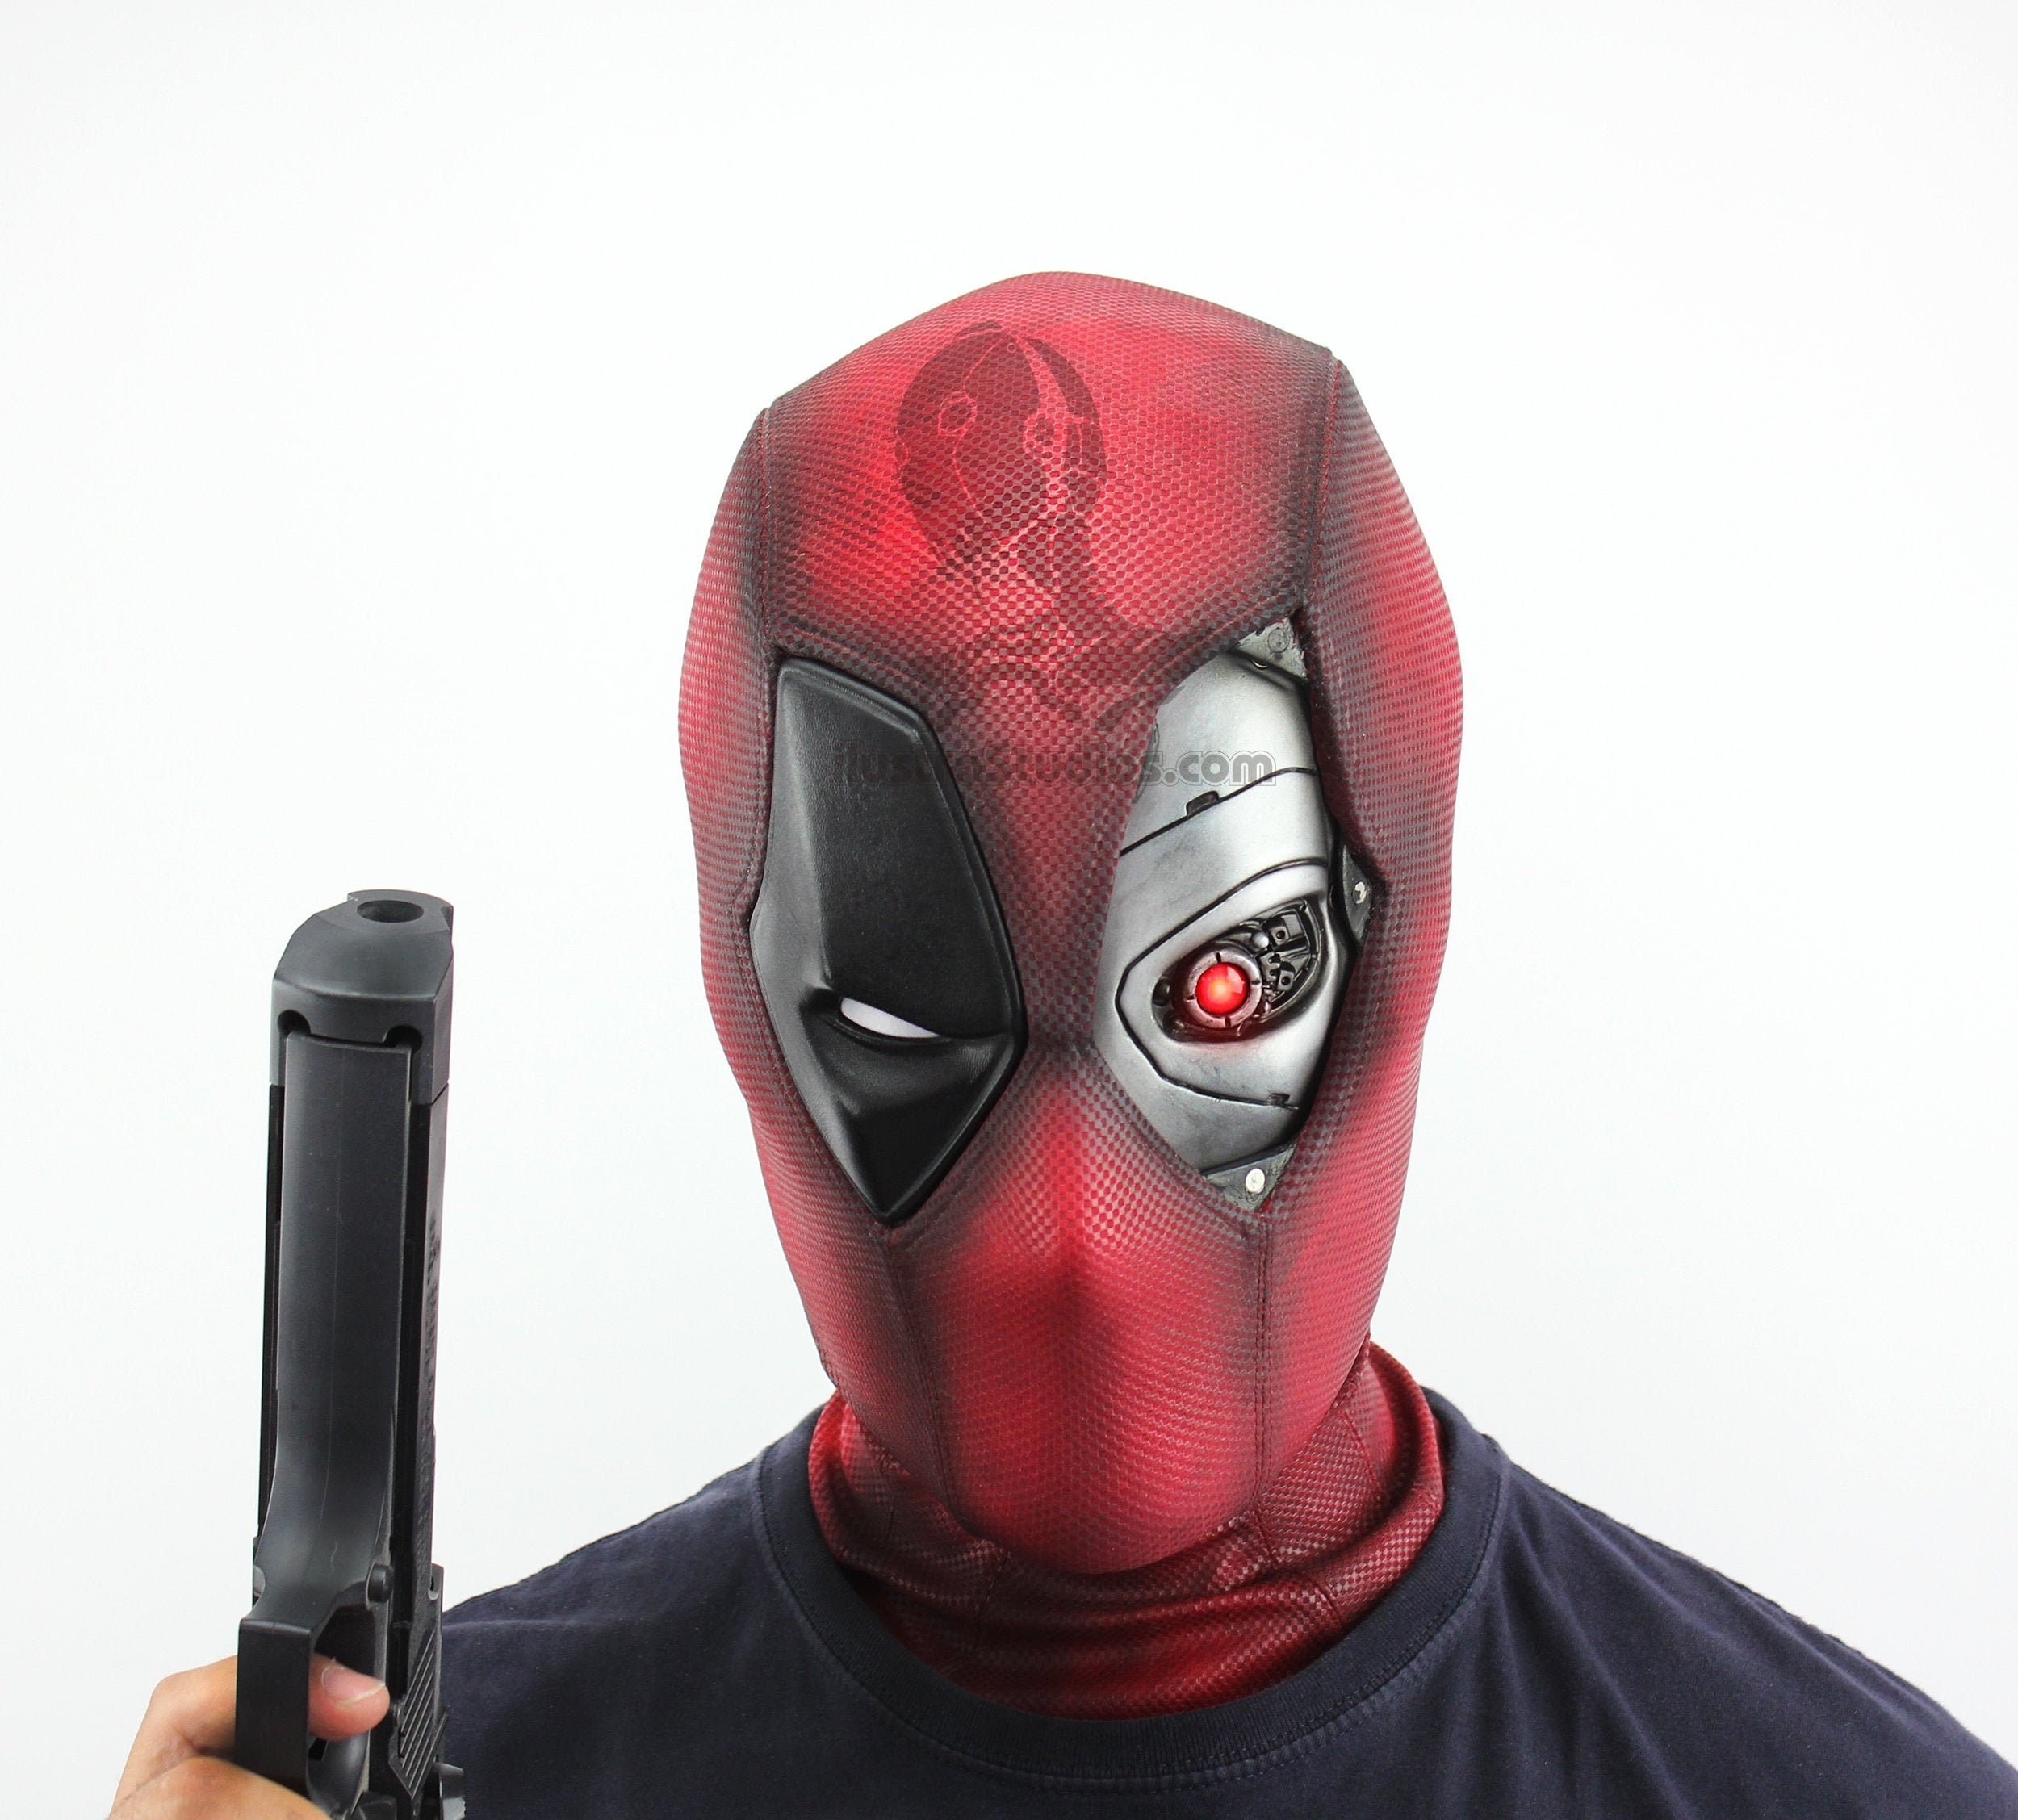 Traje De Deadpool Cosplay Disfraz Para Jóvenes Y Adultos Hombre + Mascara  De Látex Ecológico